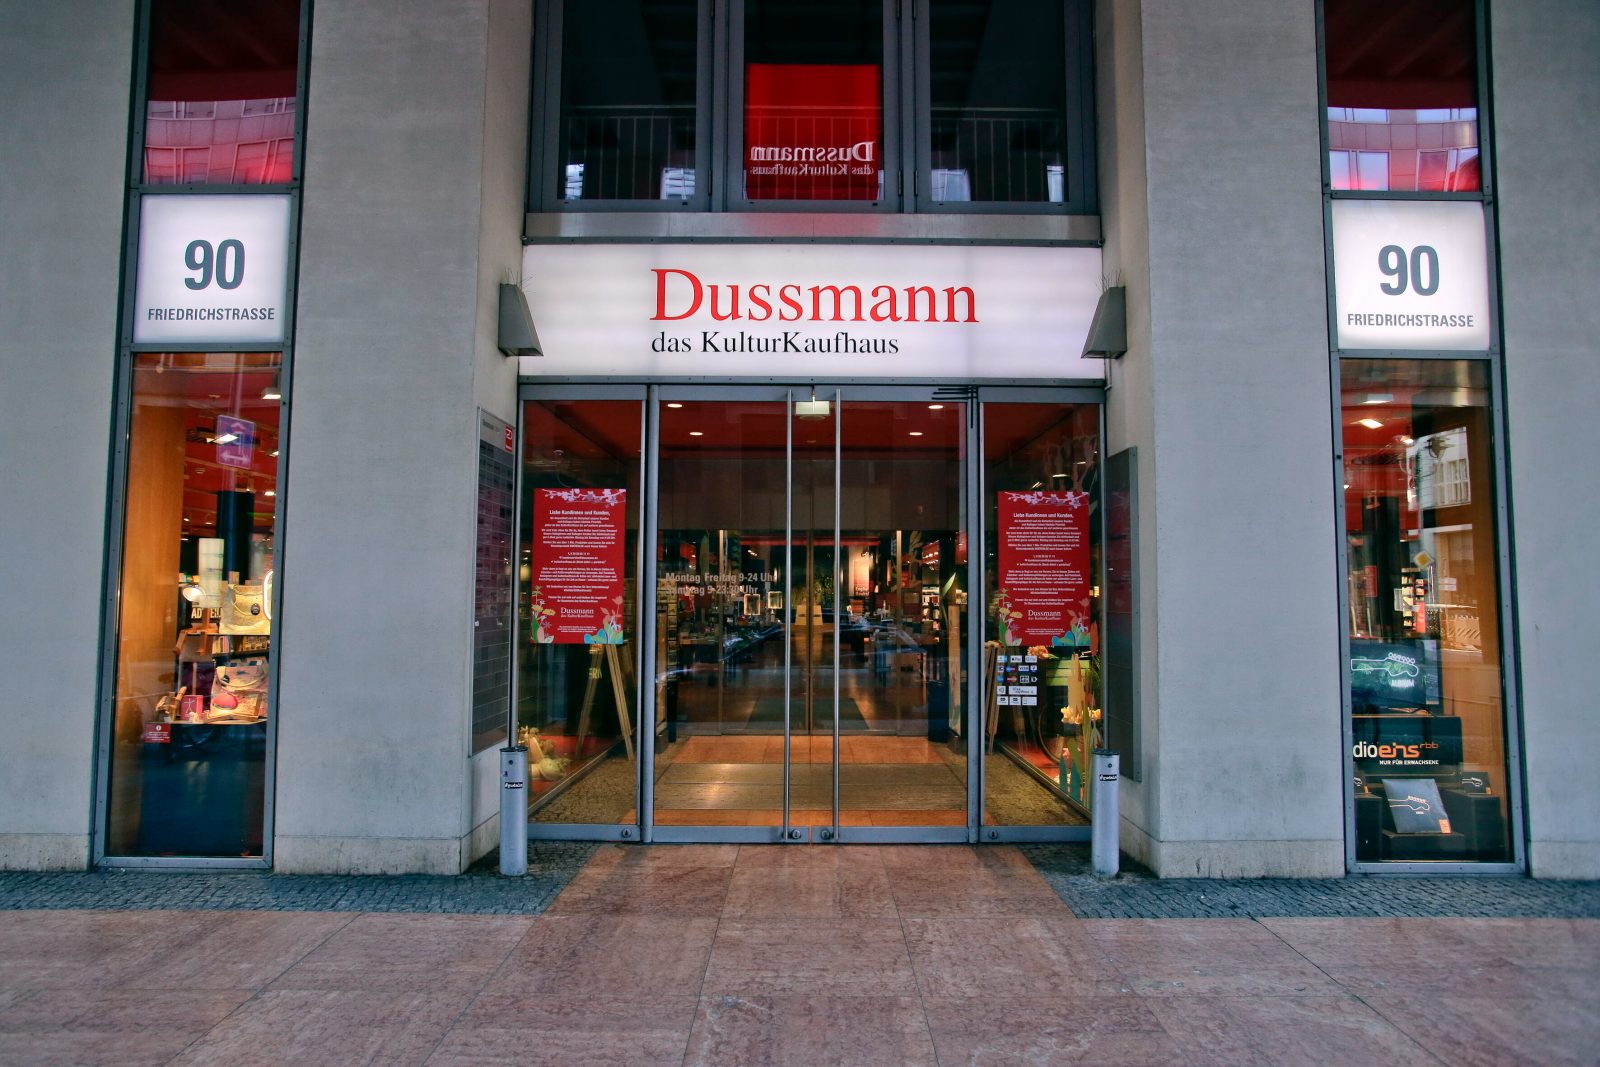 Das Kulturkaufhaus Dussmann ist eine wahre Berliner Institution. Hier finden sich Bücher zu fast jedem Thema, natürlich auch queere Literatur. Foto: Imago Images/Reiner Zensen